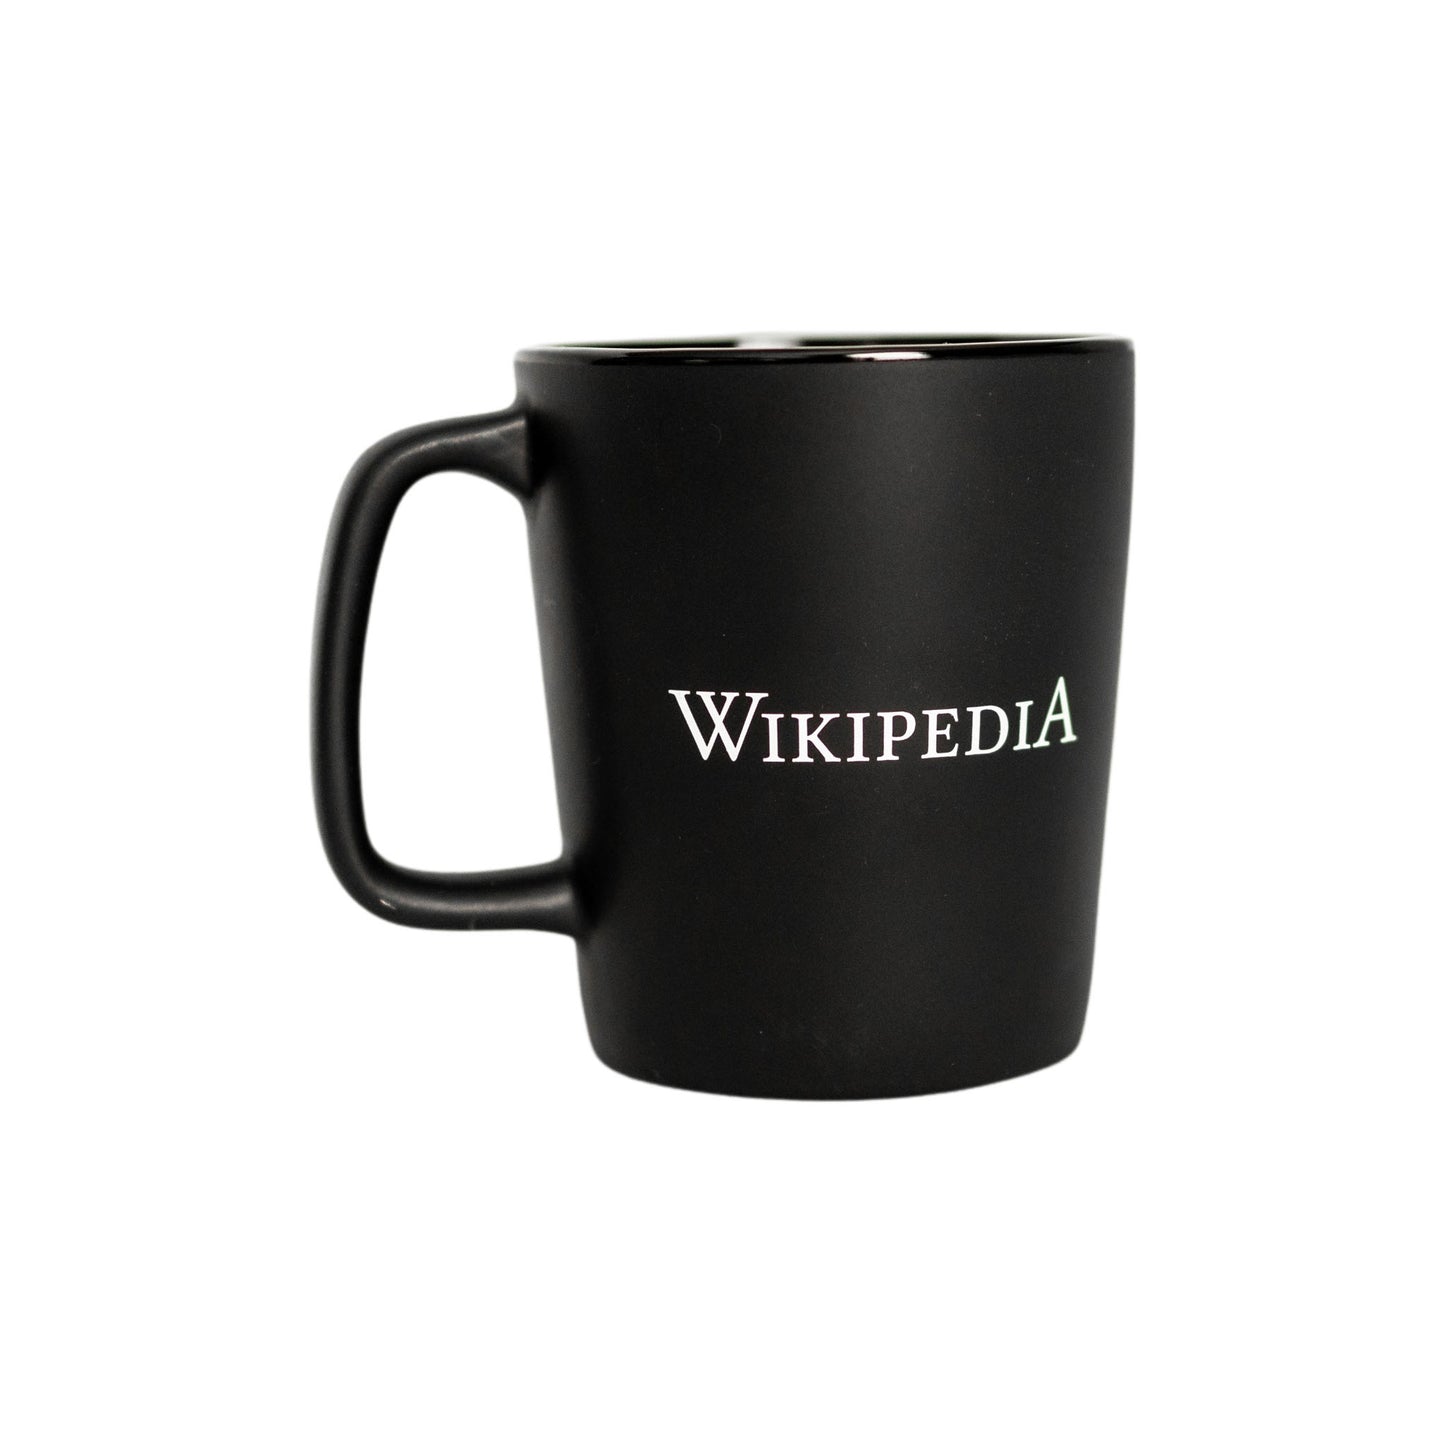 Caneca “Wikipedia Mobile Symbol” (com símbolo Smartphone da Wikipédia)